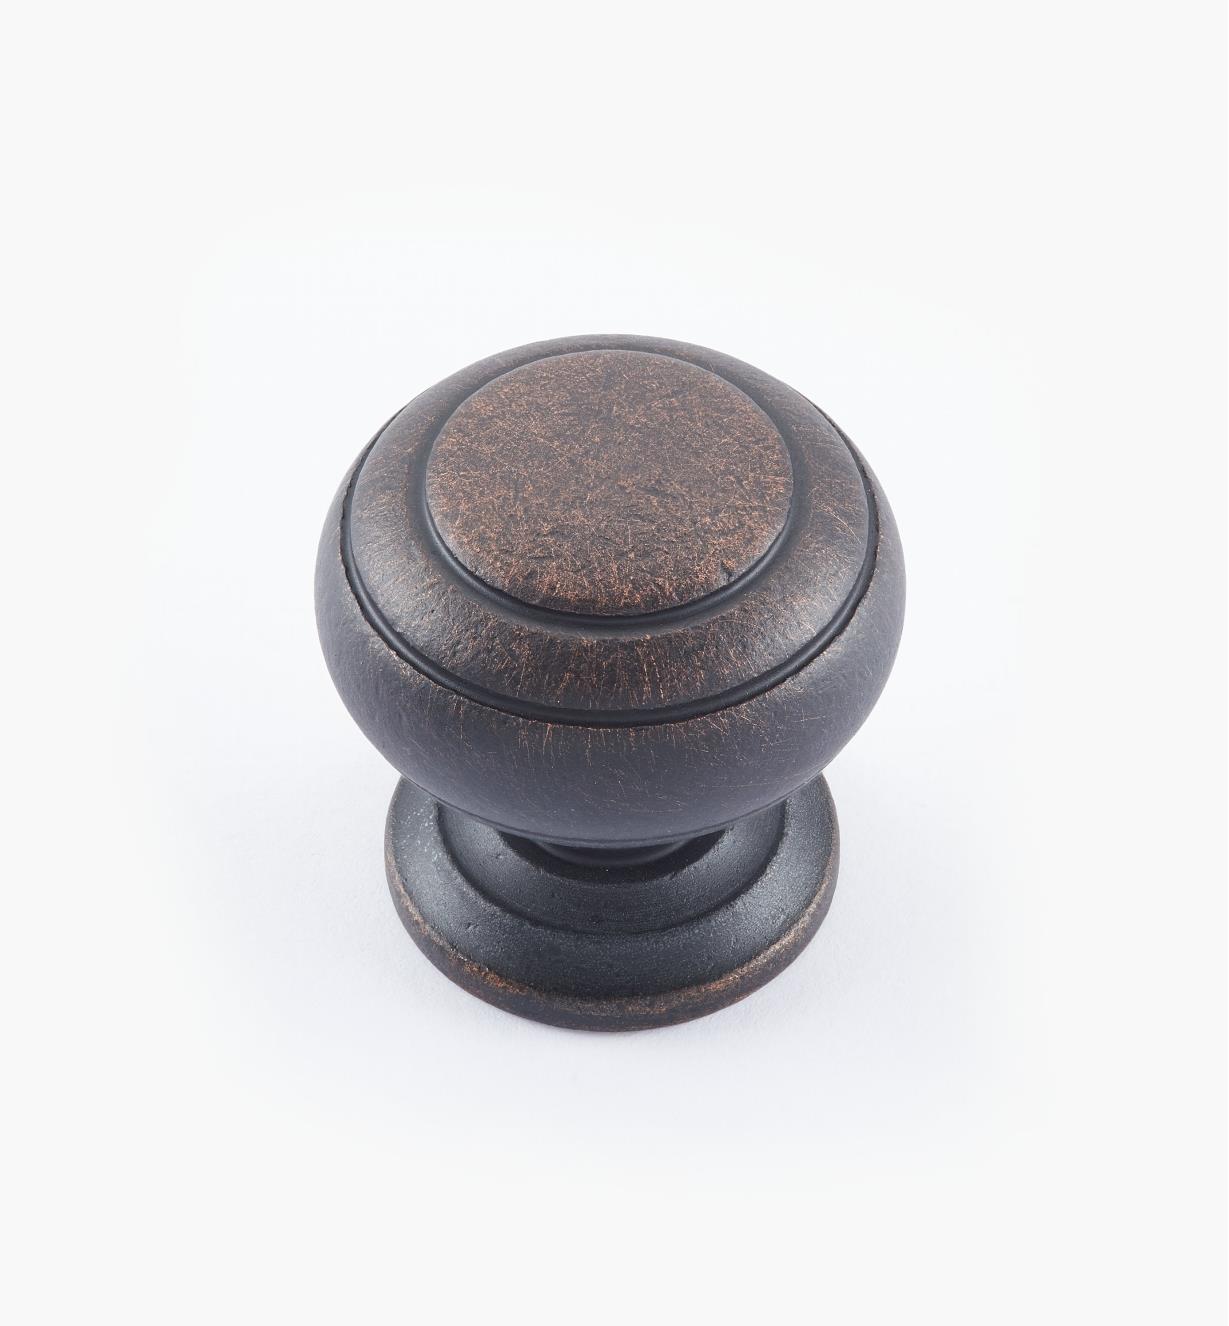 02W3266 - Bouton annelé de 1 1/4 po x 1 1/4 po, série Vieux Bronze, laiton tourné